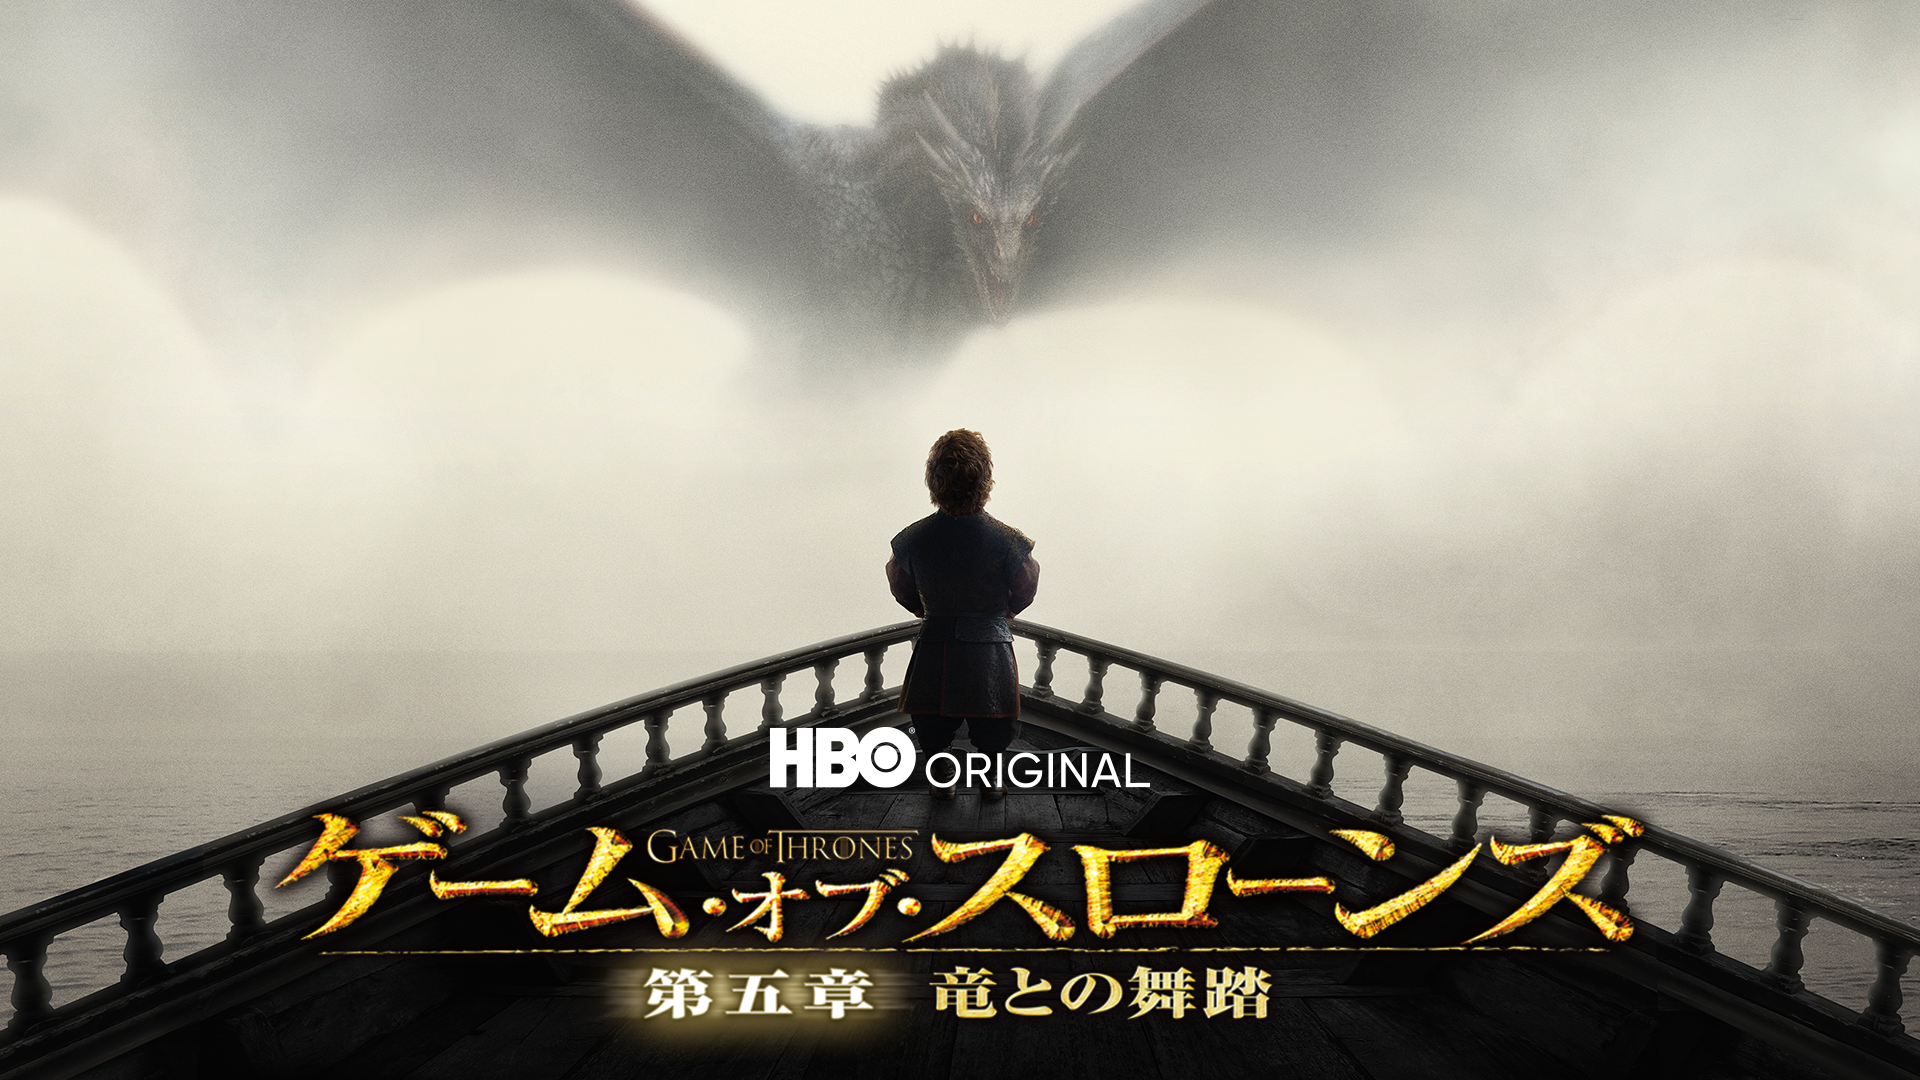 ゲーム・オブ・スローンズ 第五章: 竜との舞踏 ブルーレイセット(5枚組) [Blu-ray] z2zed1b